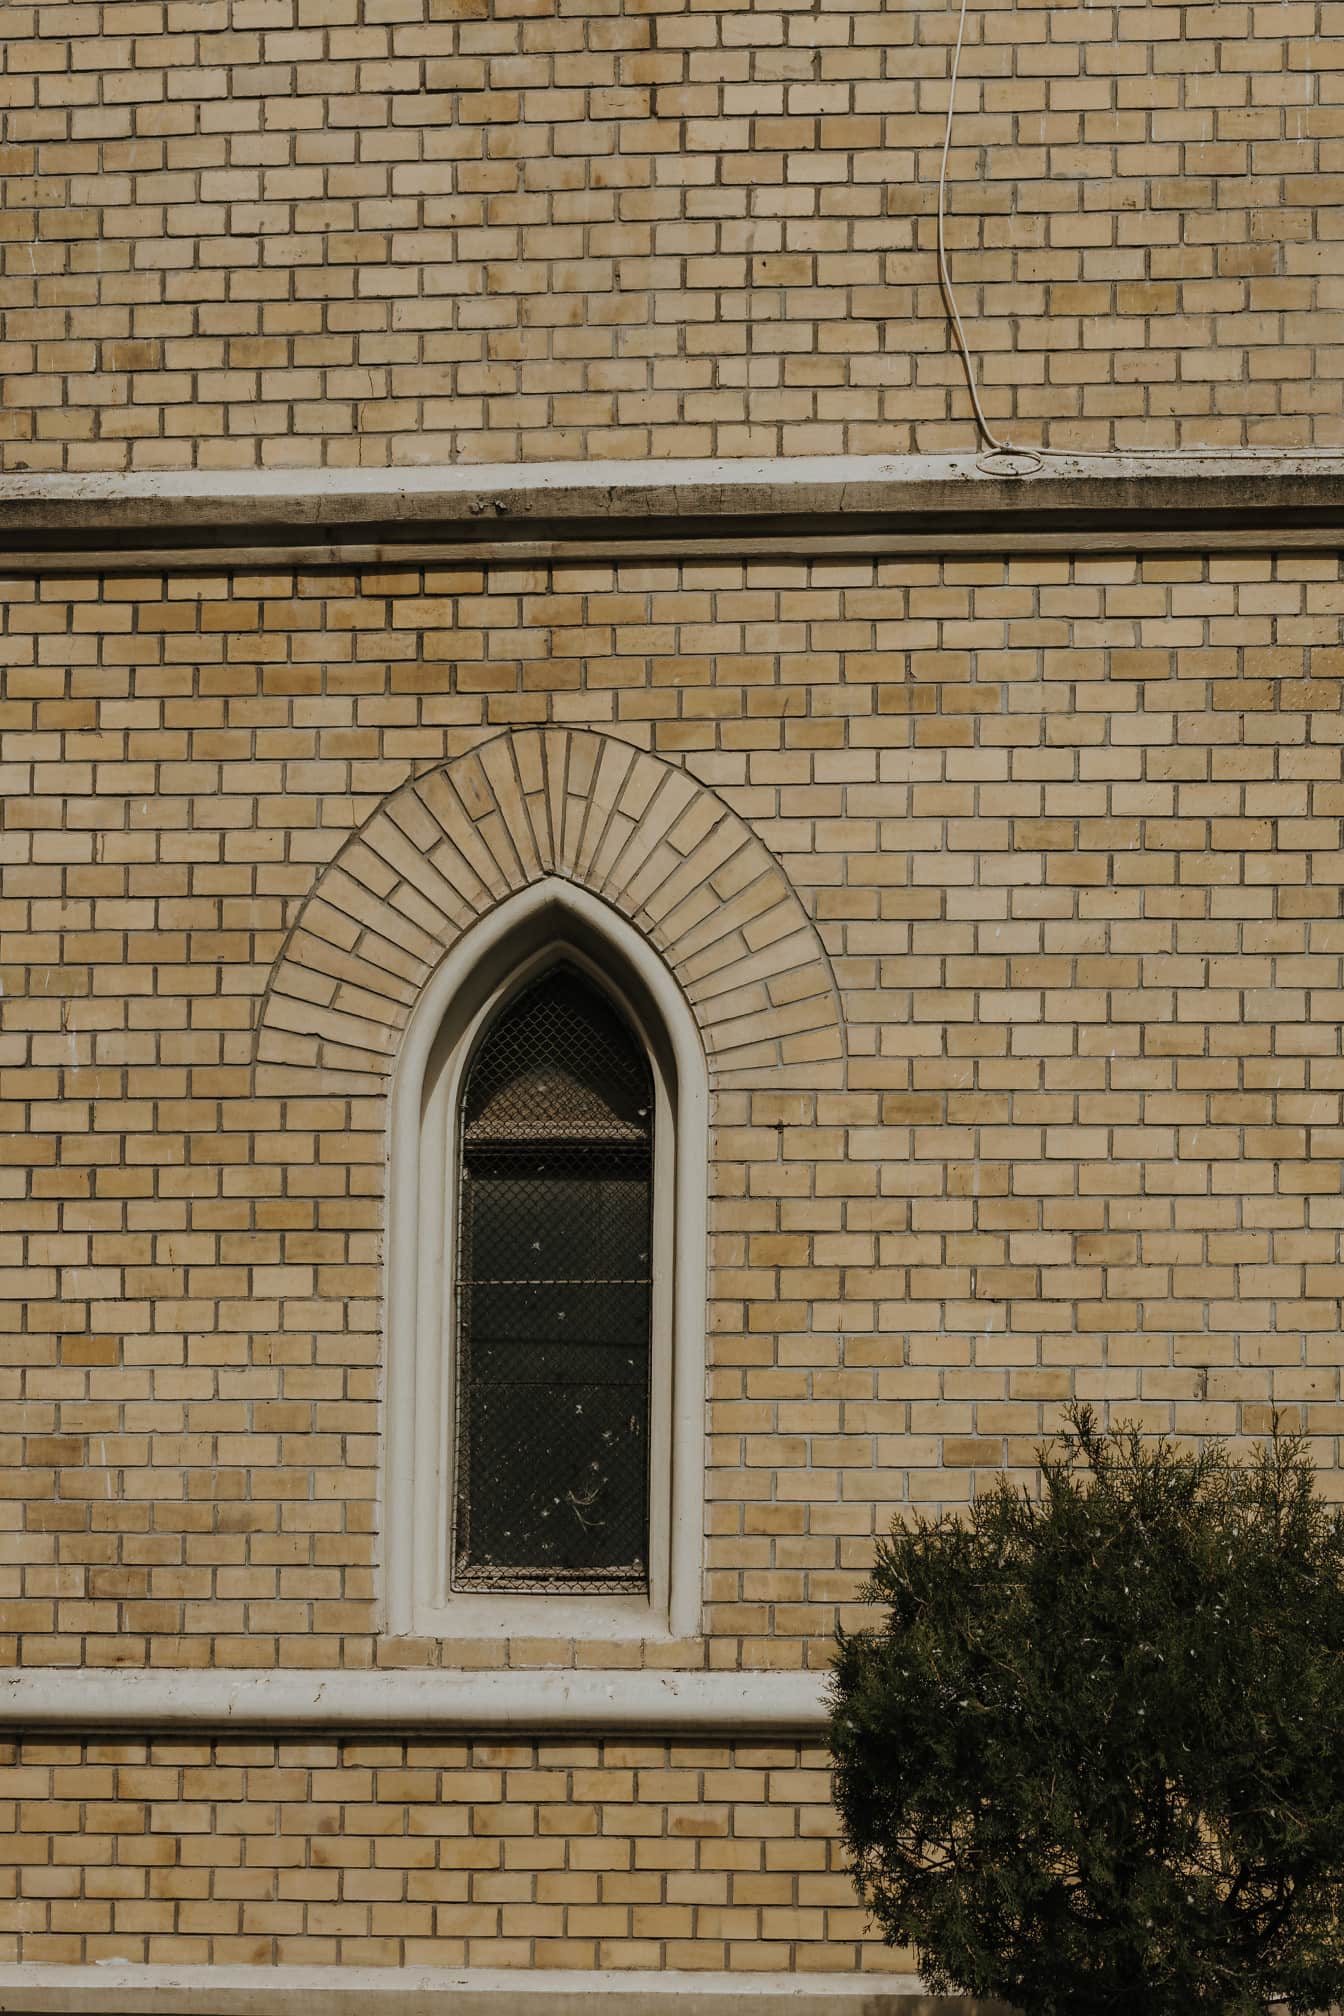 Tuğla duvarda kemerli küçük gotik pencere